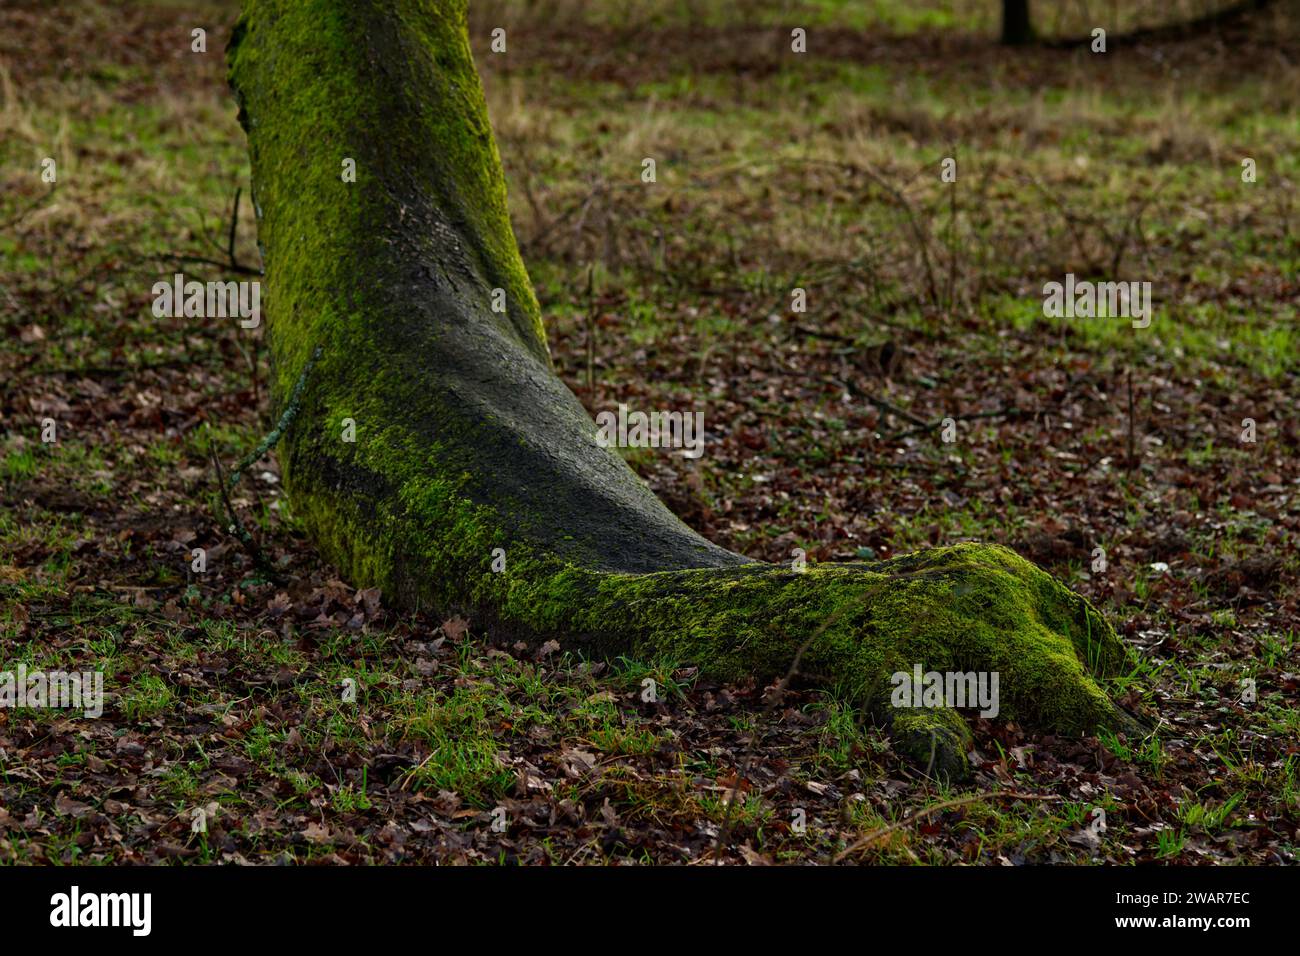 primo piano del piede di un albero che sembra l'imitazione di un piede o di una zampa di un animale Foto Stock